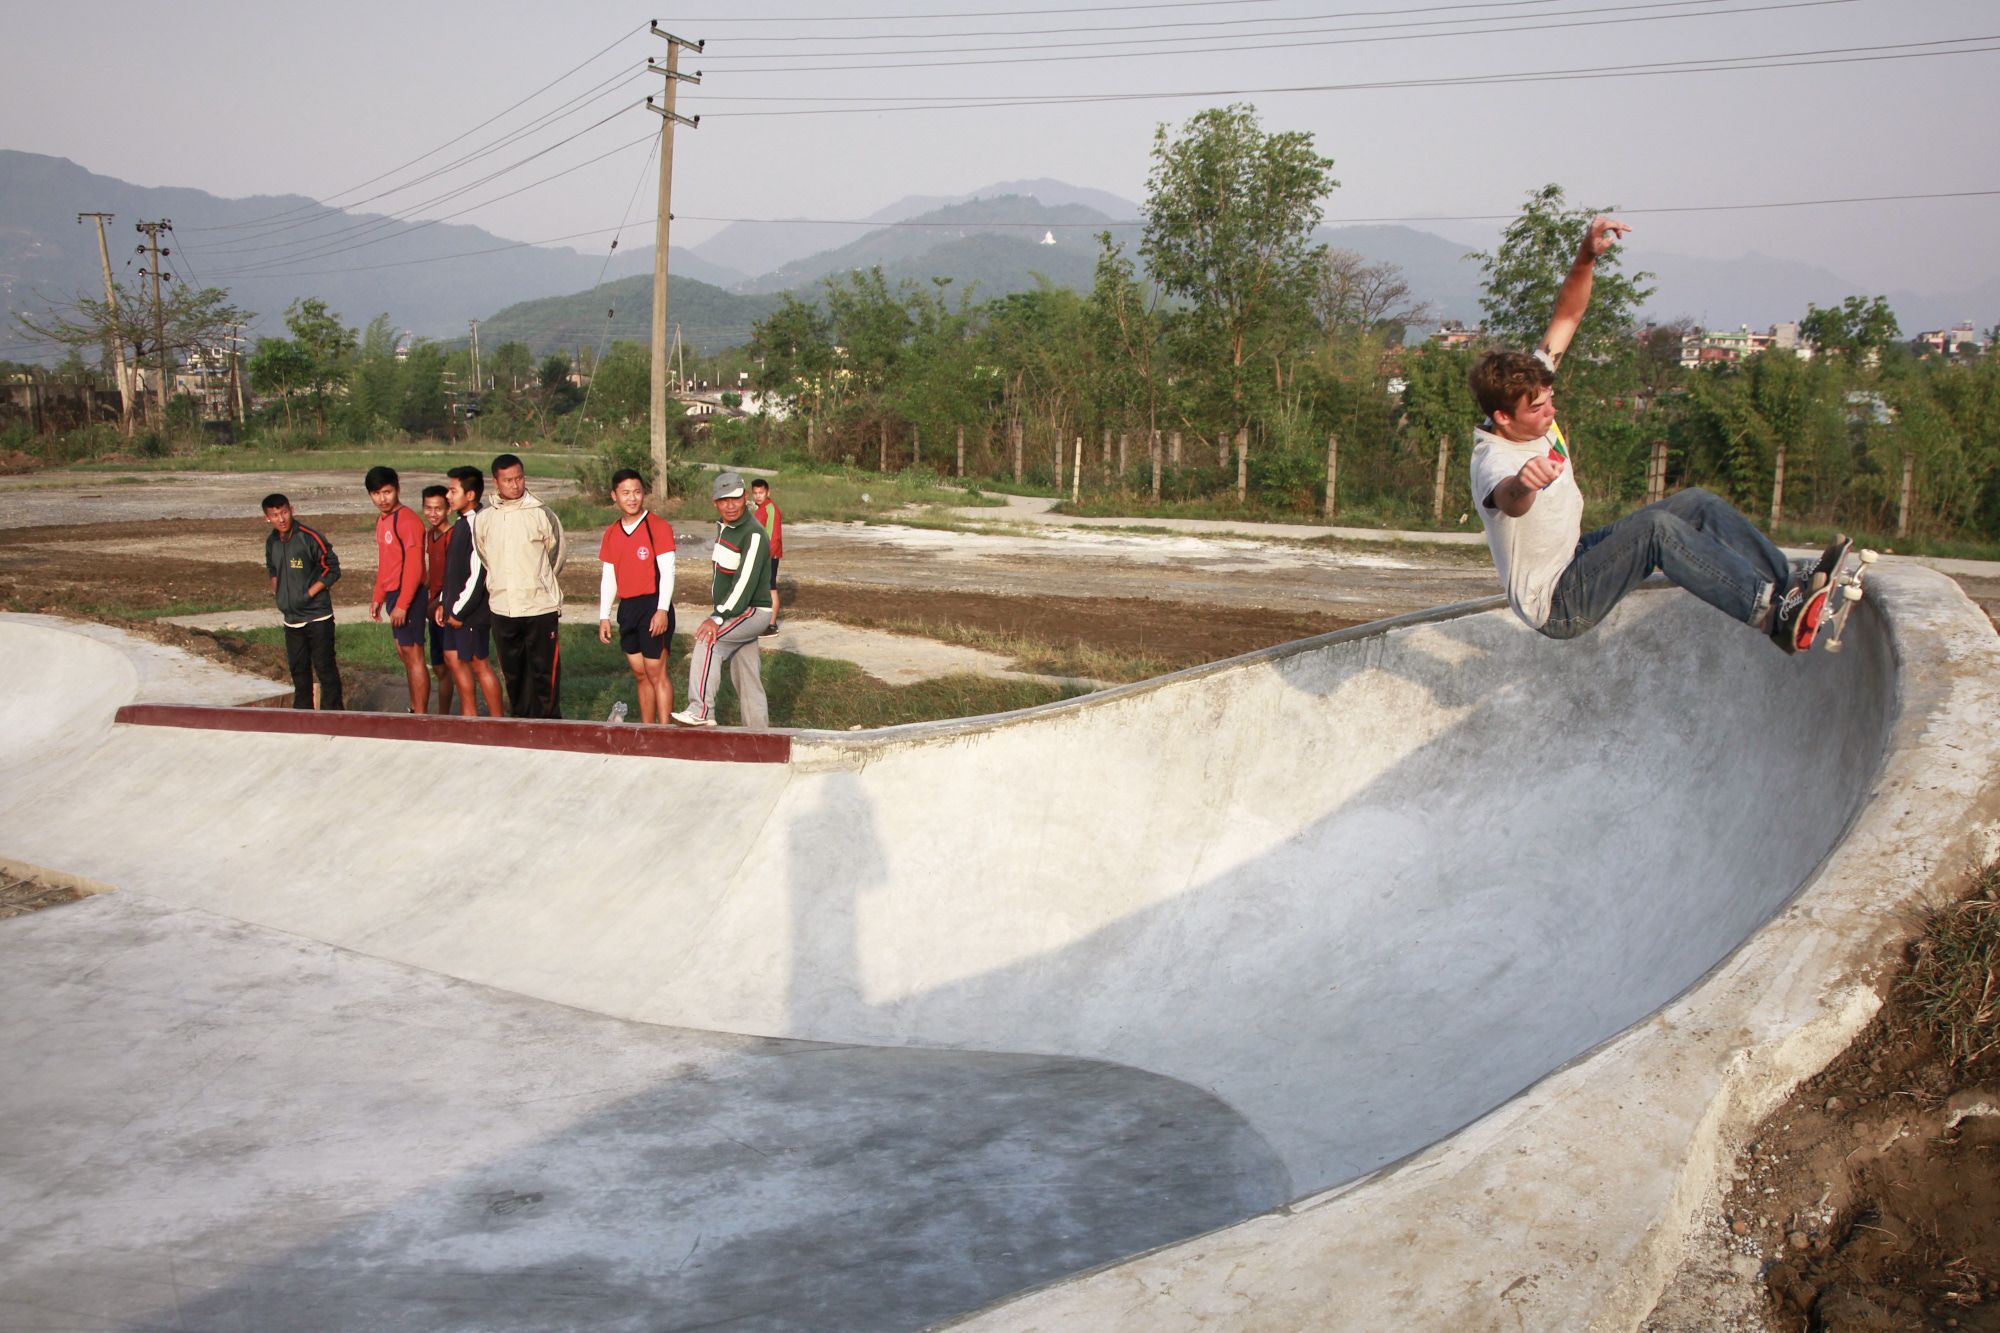 Annapurna Skatepark